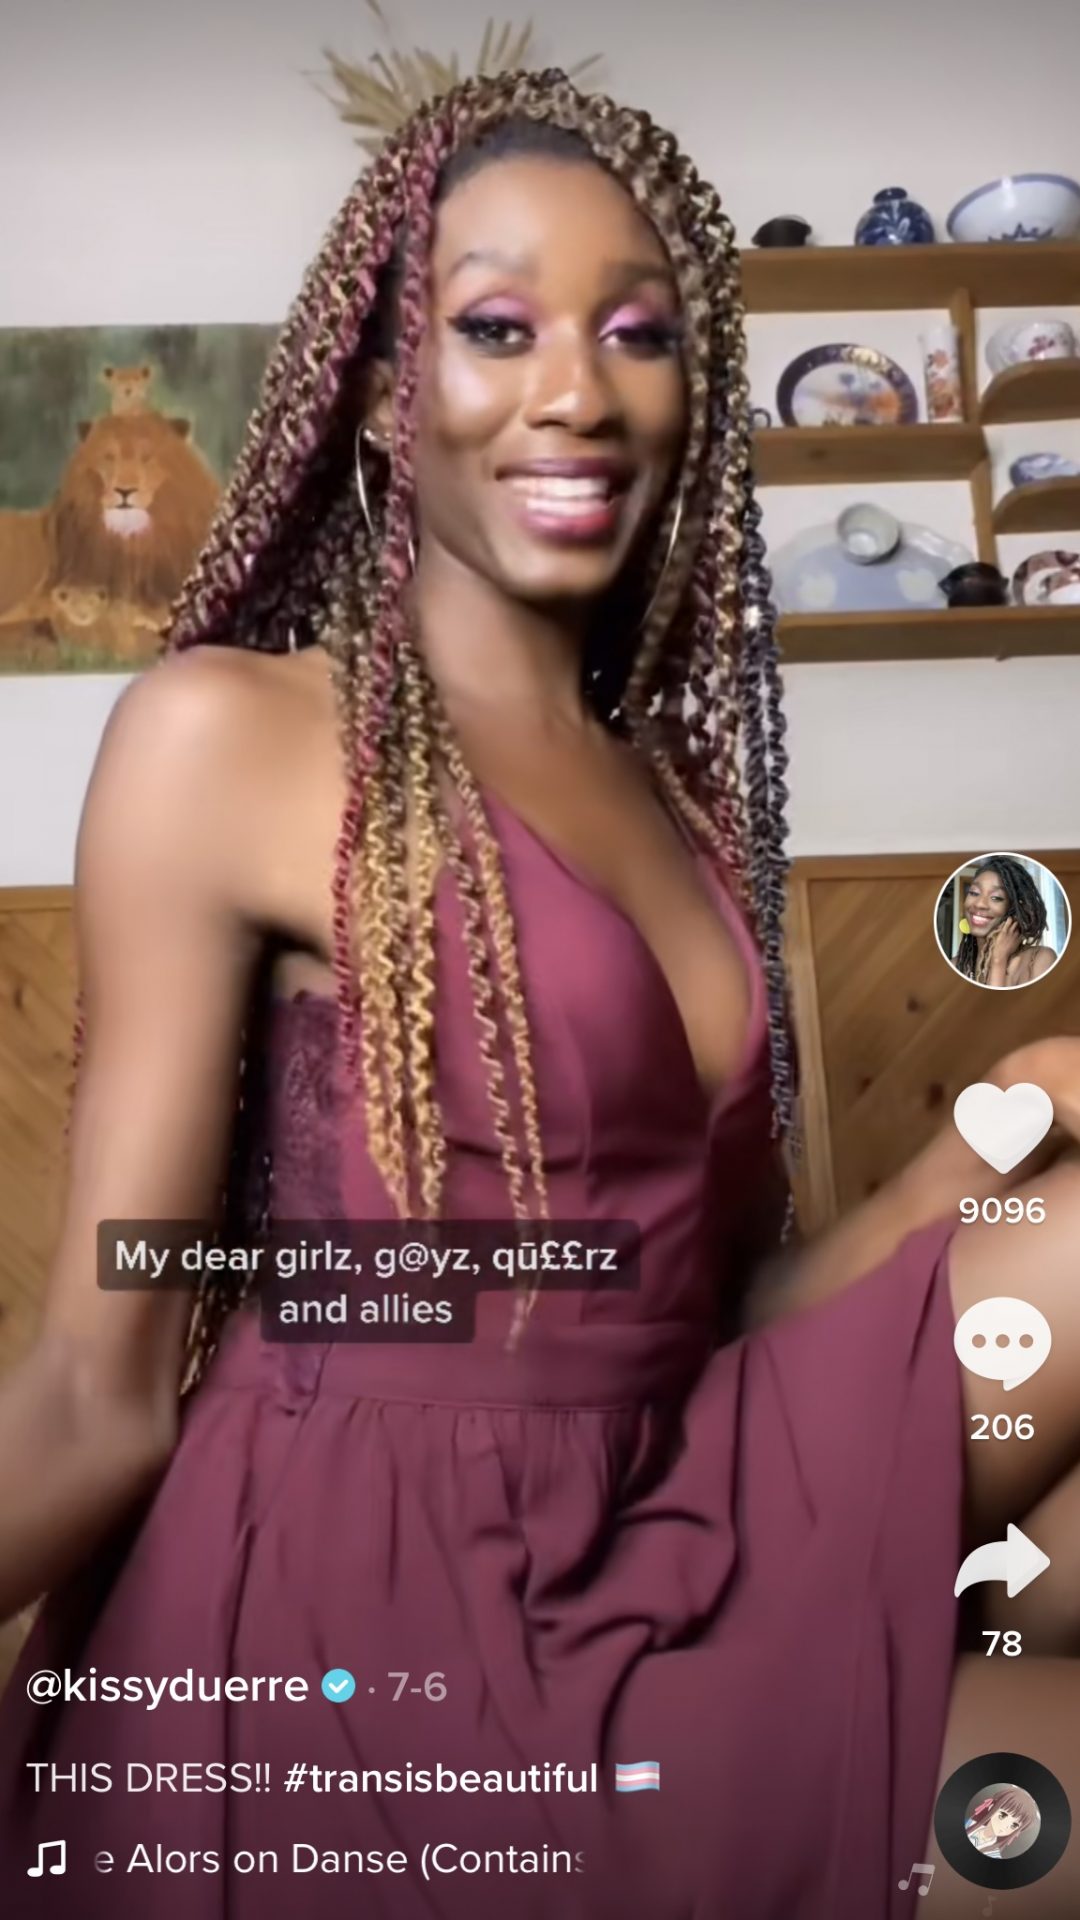 Screenshot image of a TikTok influencer wearing a burgundy dress